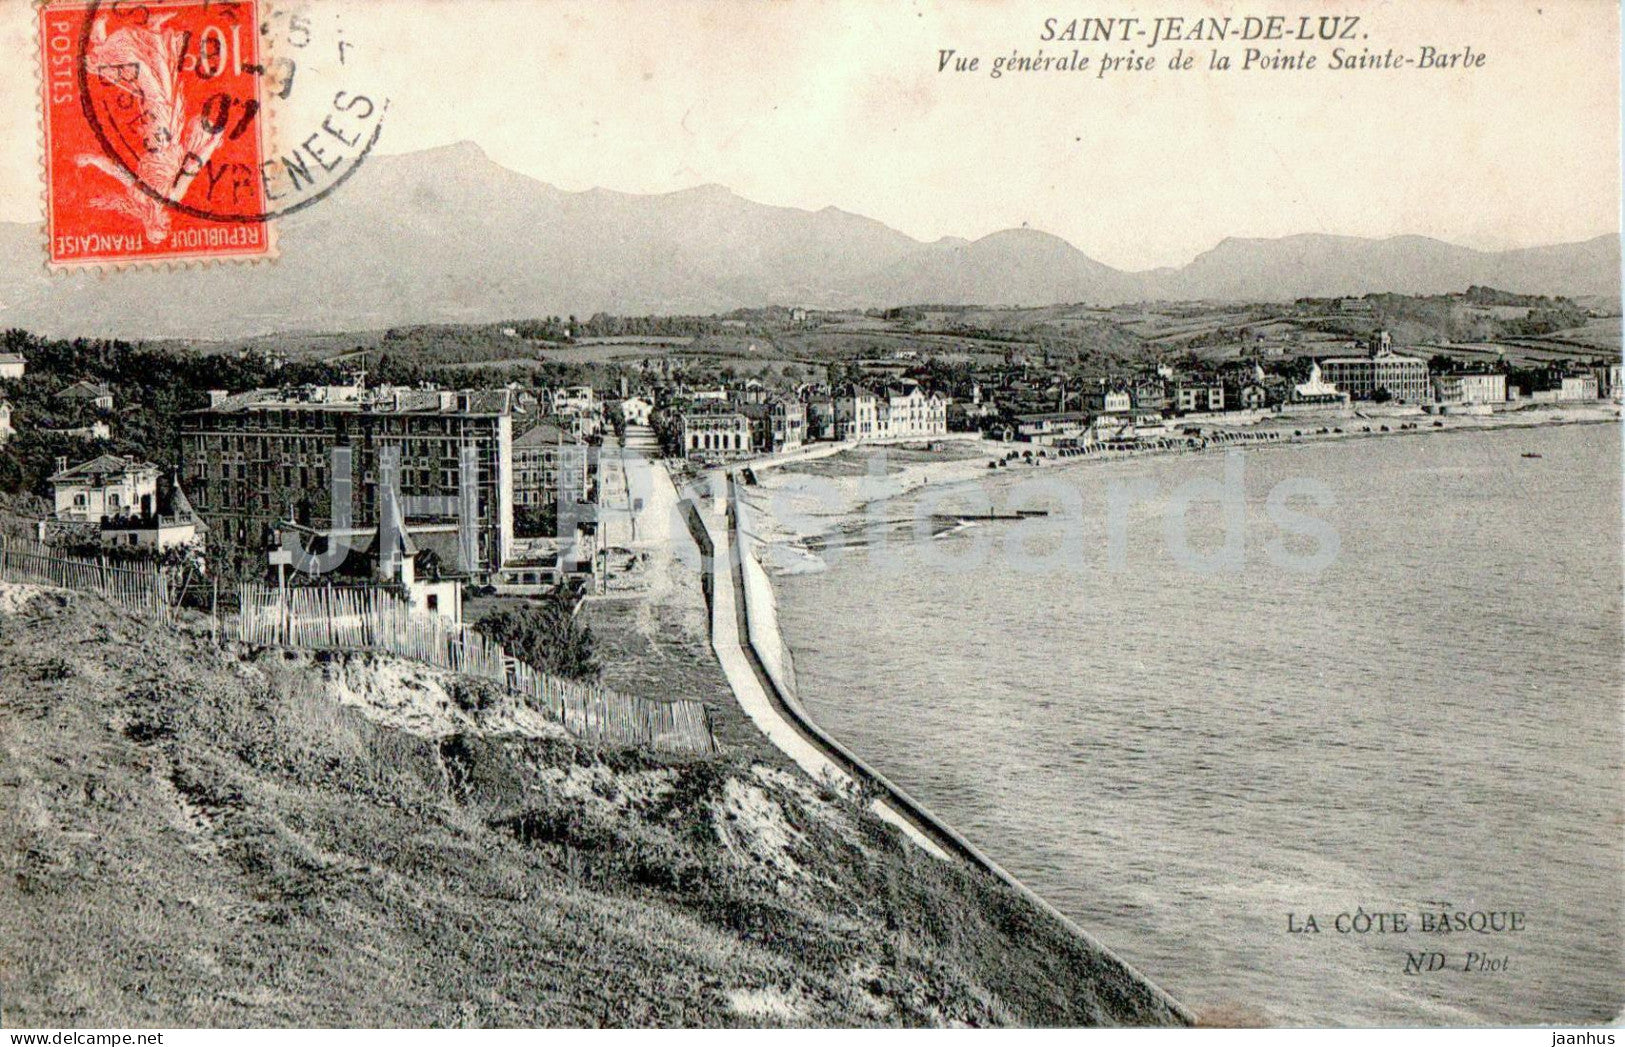 Saint Jean de Luz - Vue generale prise de la Pointe Sainte Barbe - old postcard - 1907 - France - used - JH Postcards